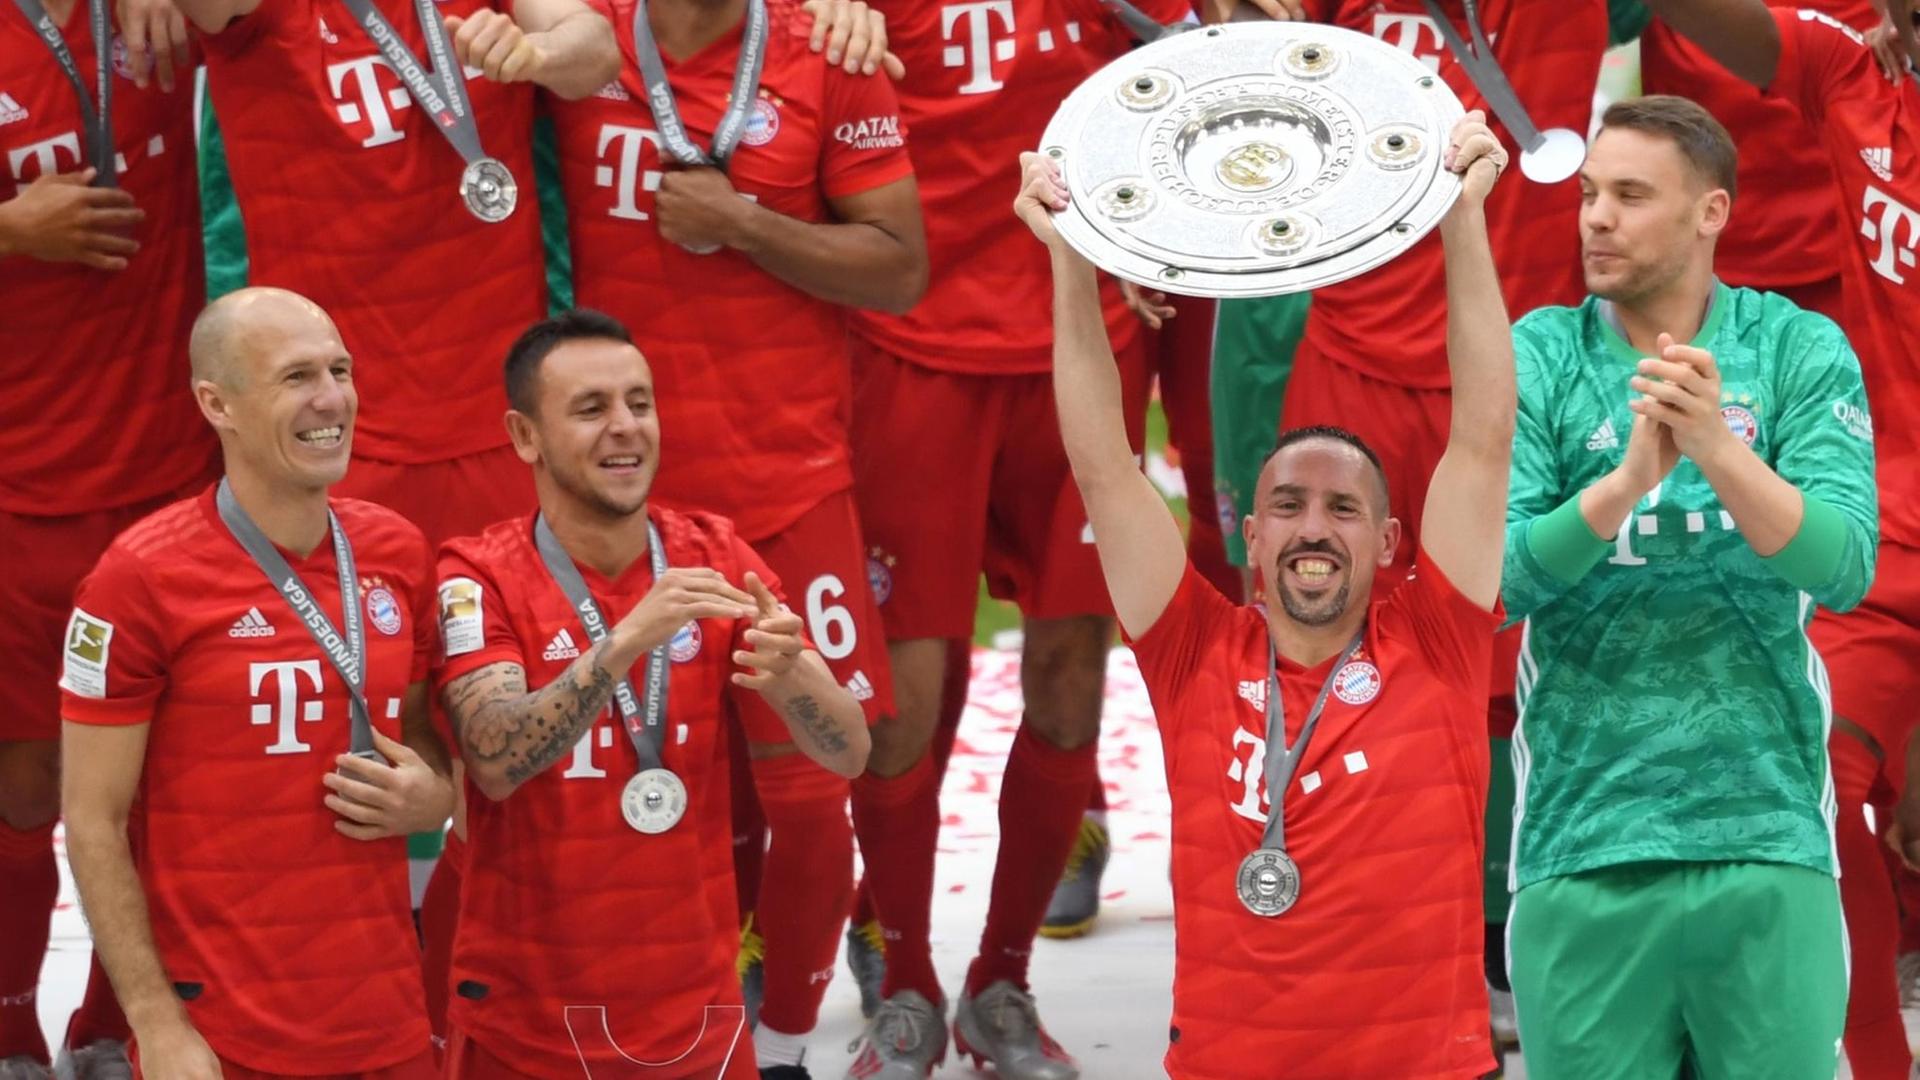 Die Bayern-Spieler Arjen Robben, Rafinha, Franck Ribery und Manuel Neuer jubeln mit der Meisterschale.